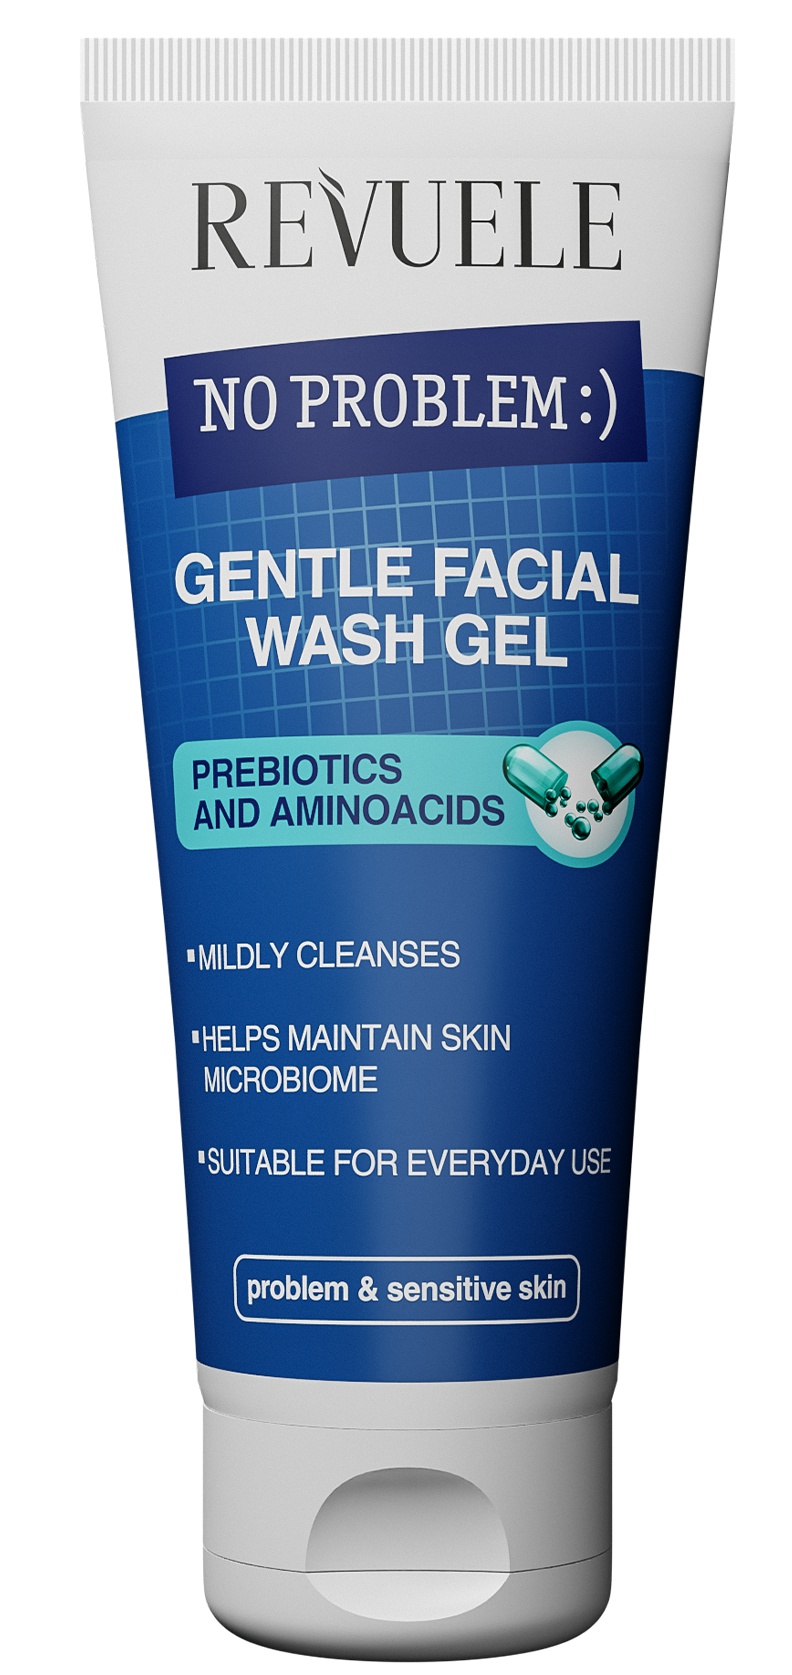 Revuele No Problem Gentle Facial Wash Gel Prebiotics And Aminoacids